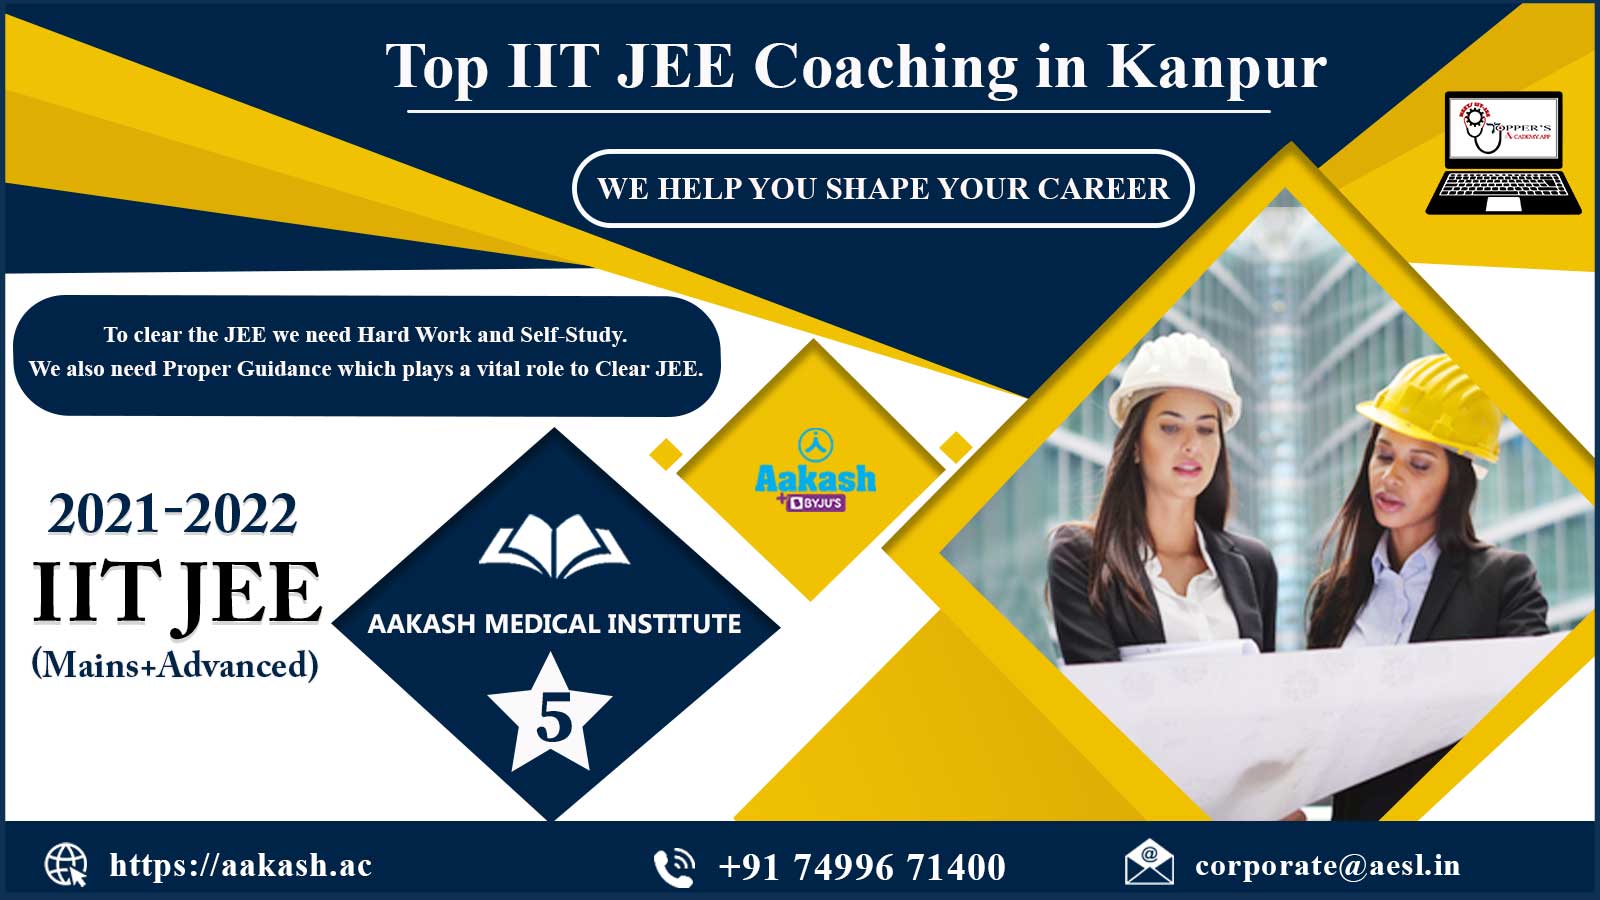 Aakash IIT JEE Coaching in Kanpur